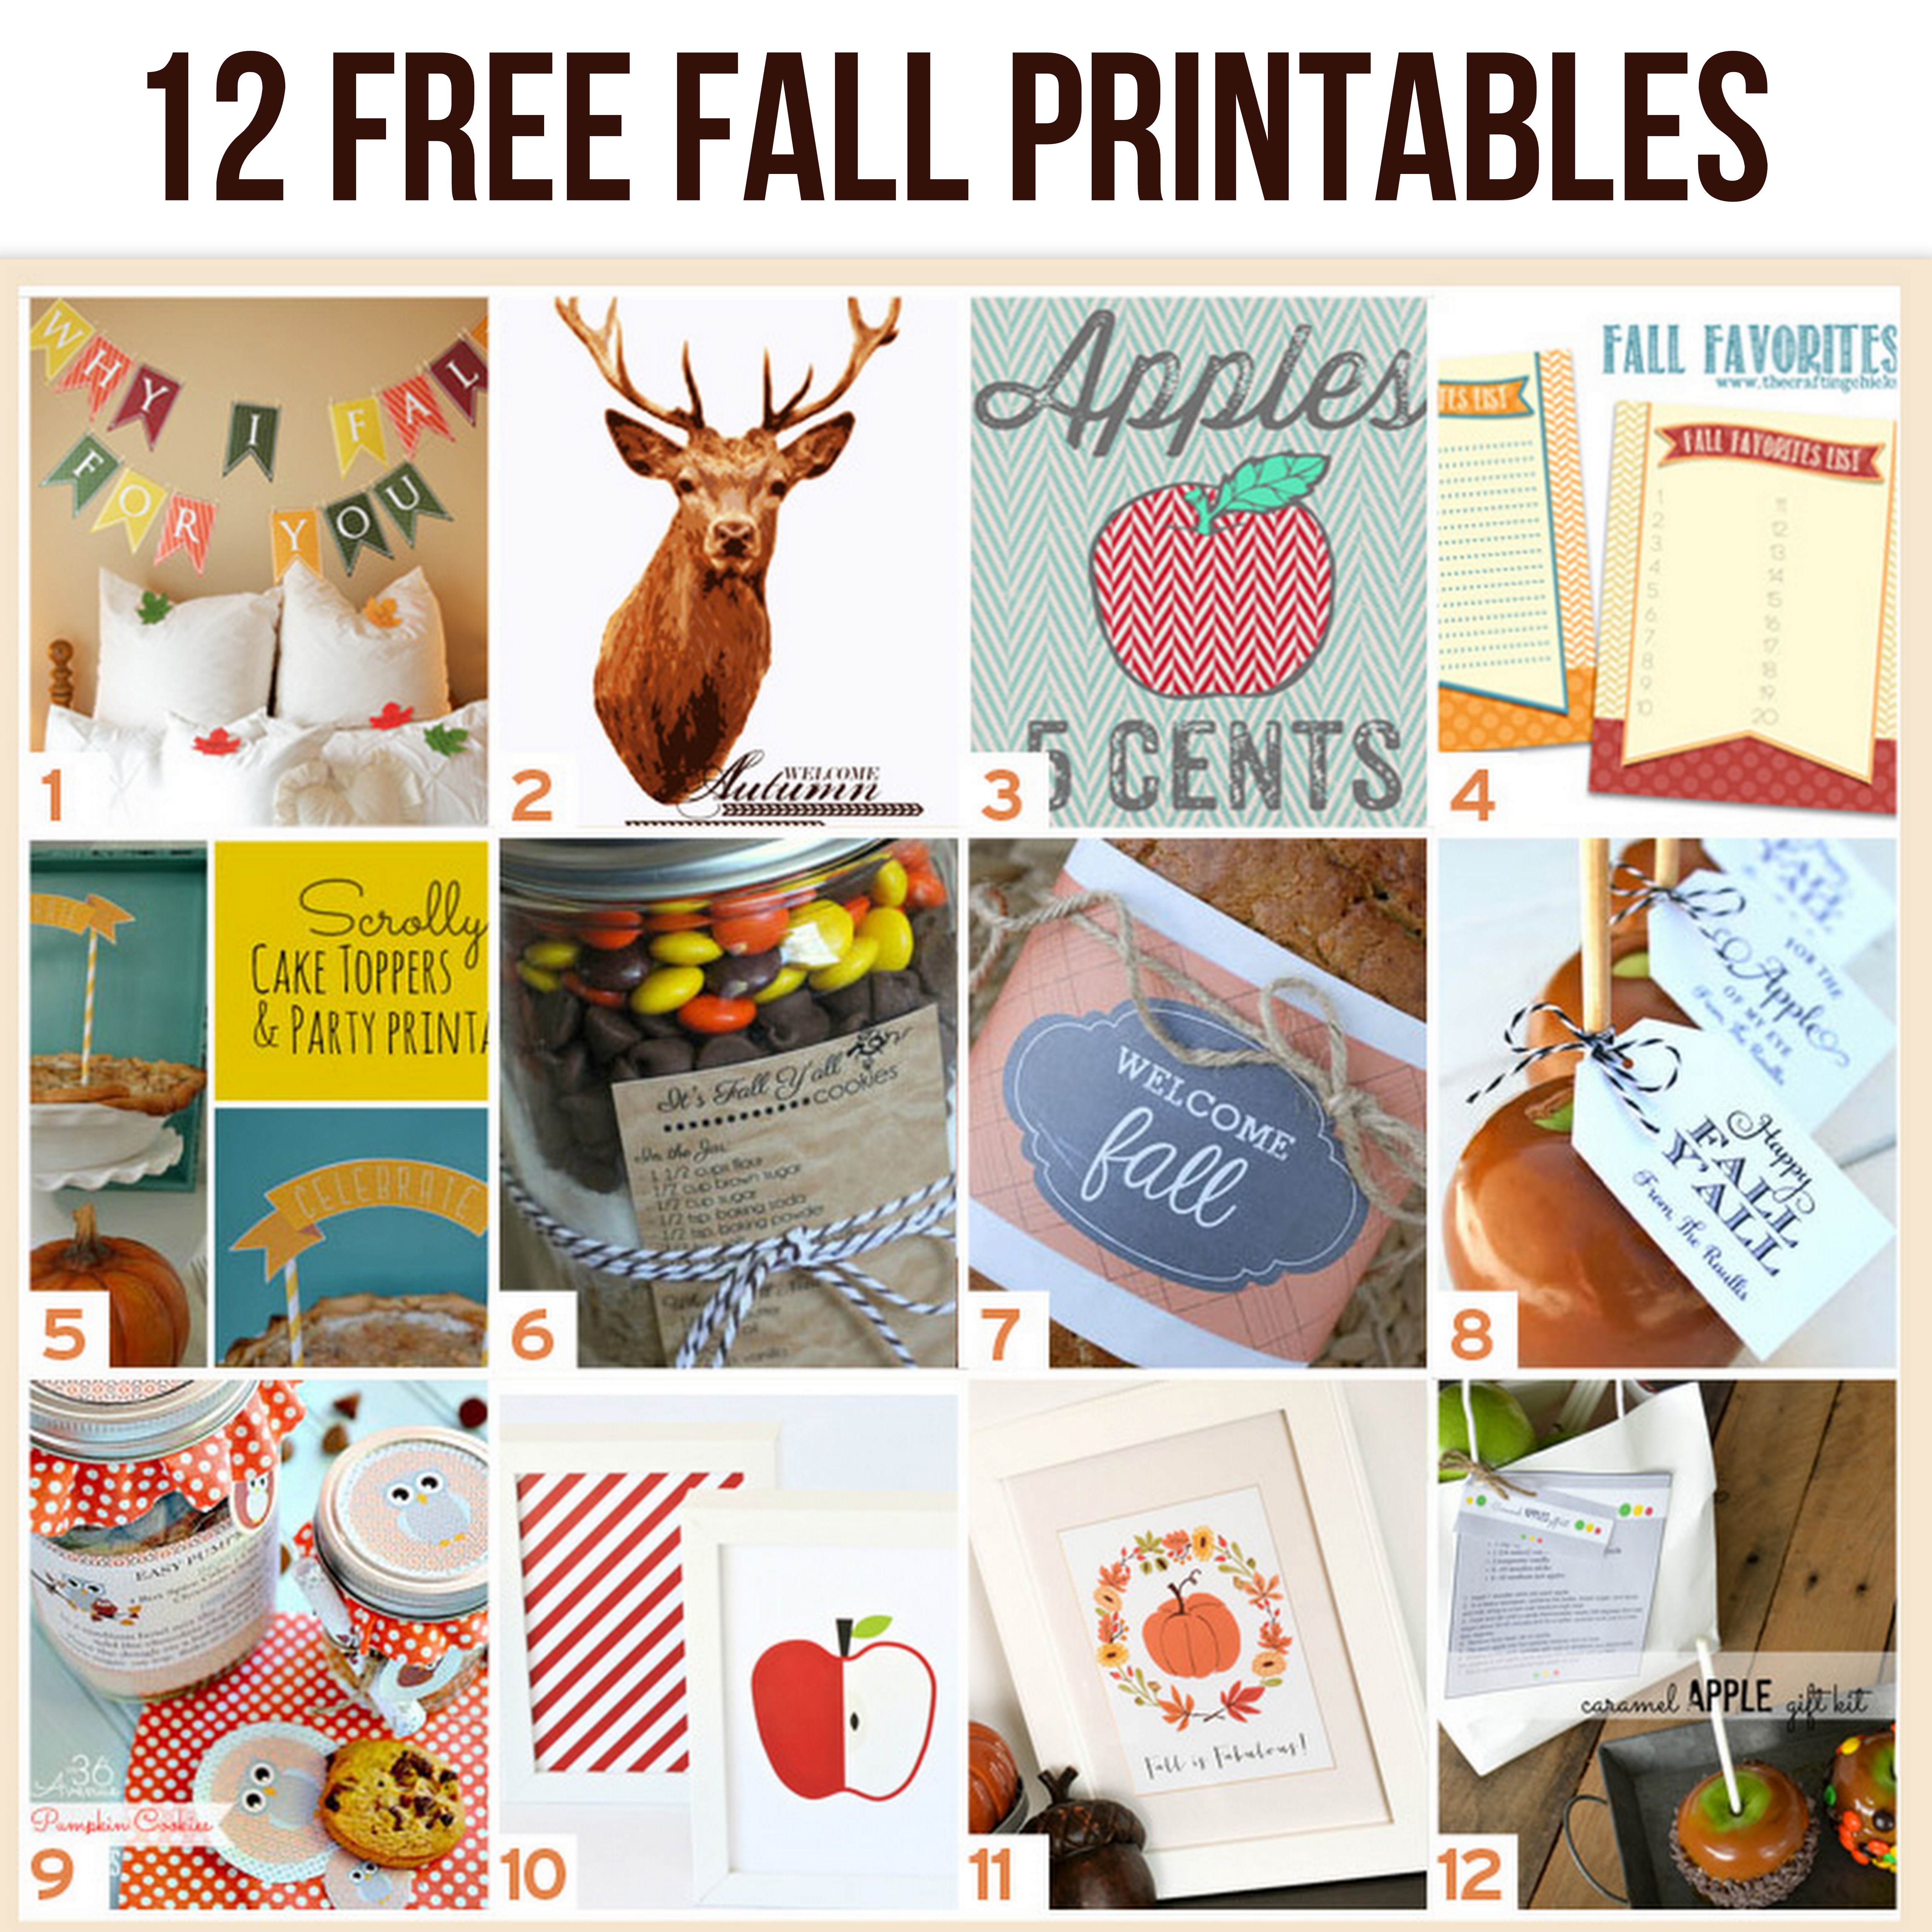 12 free fall printables